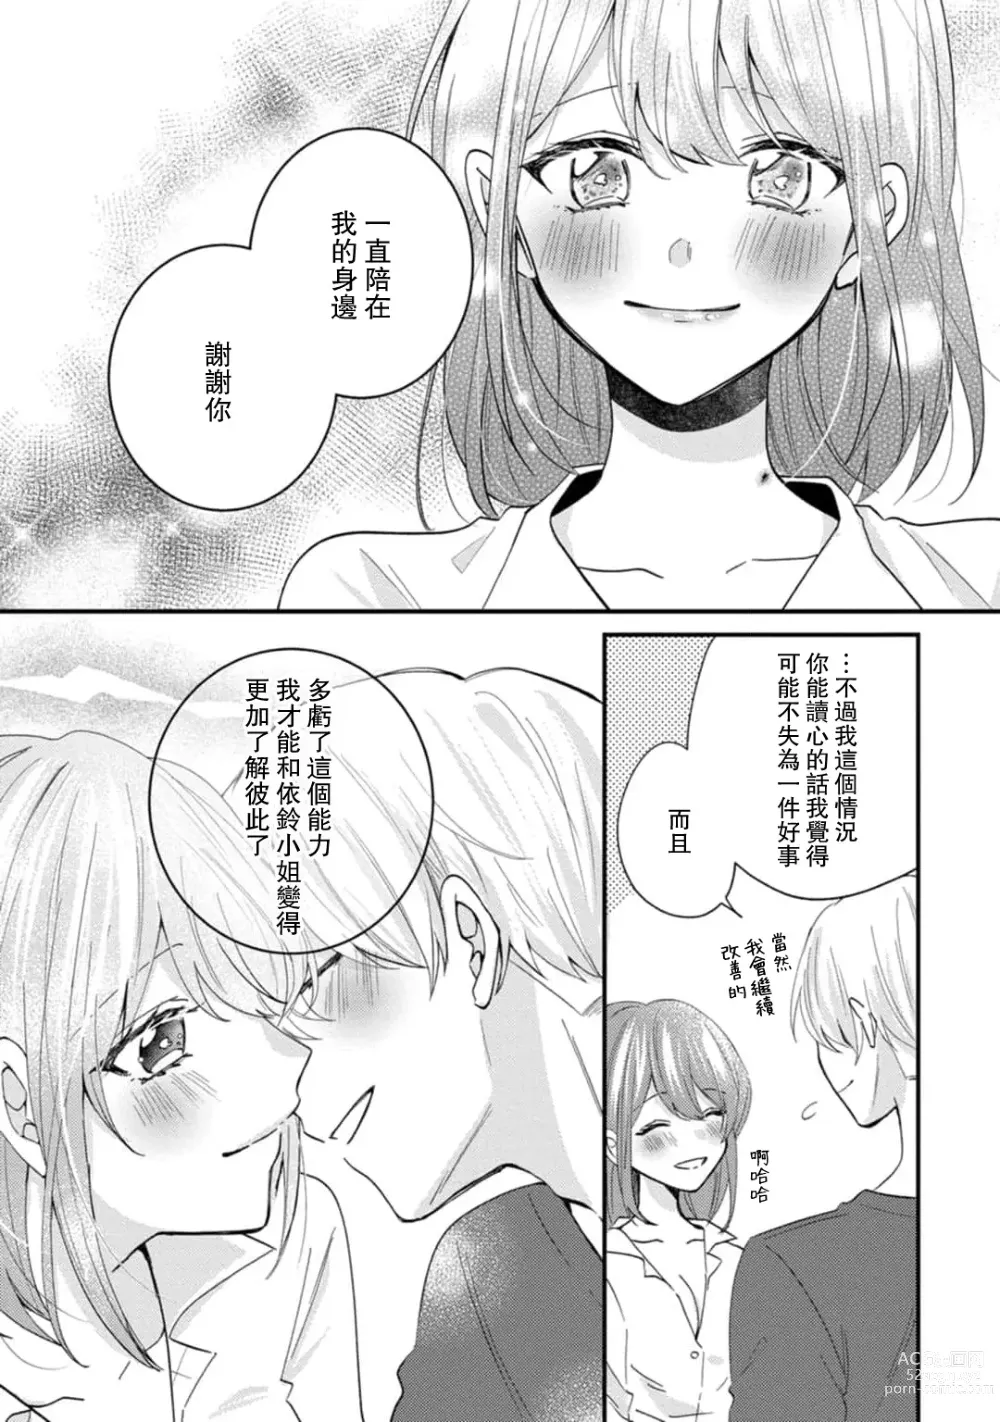 Page 159 of manga 冷酷绅士的性癖只对我泄露 1-5 end